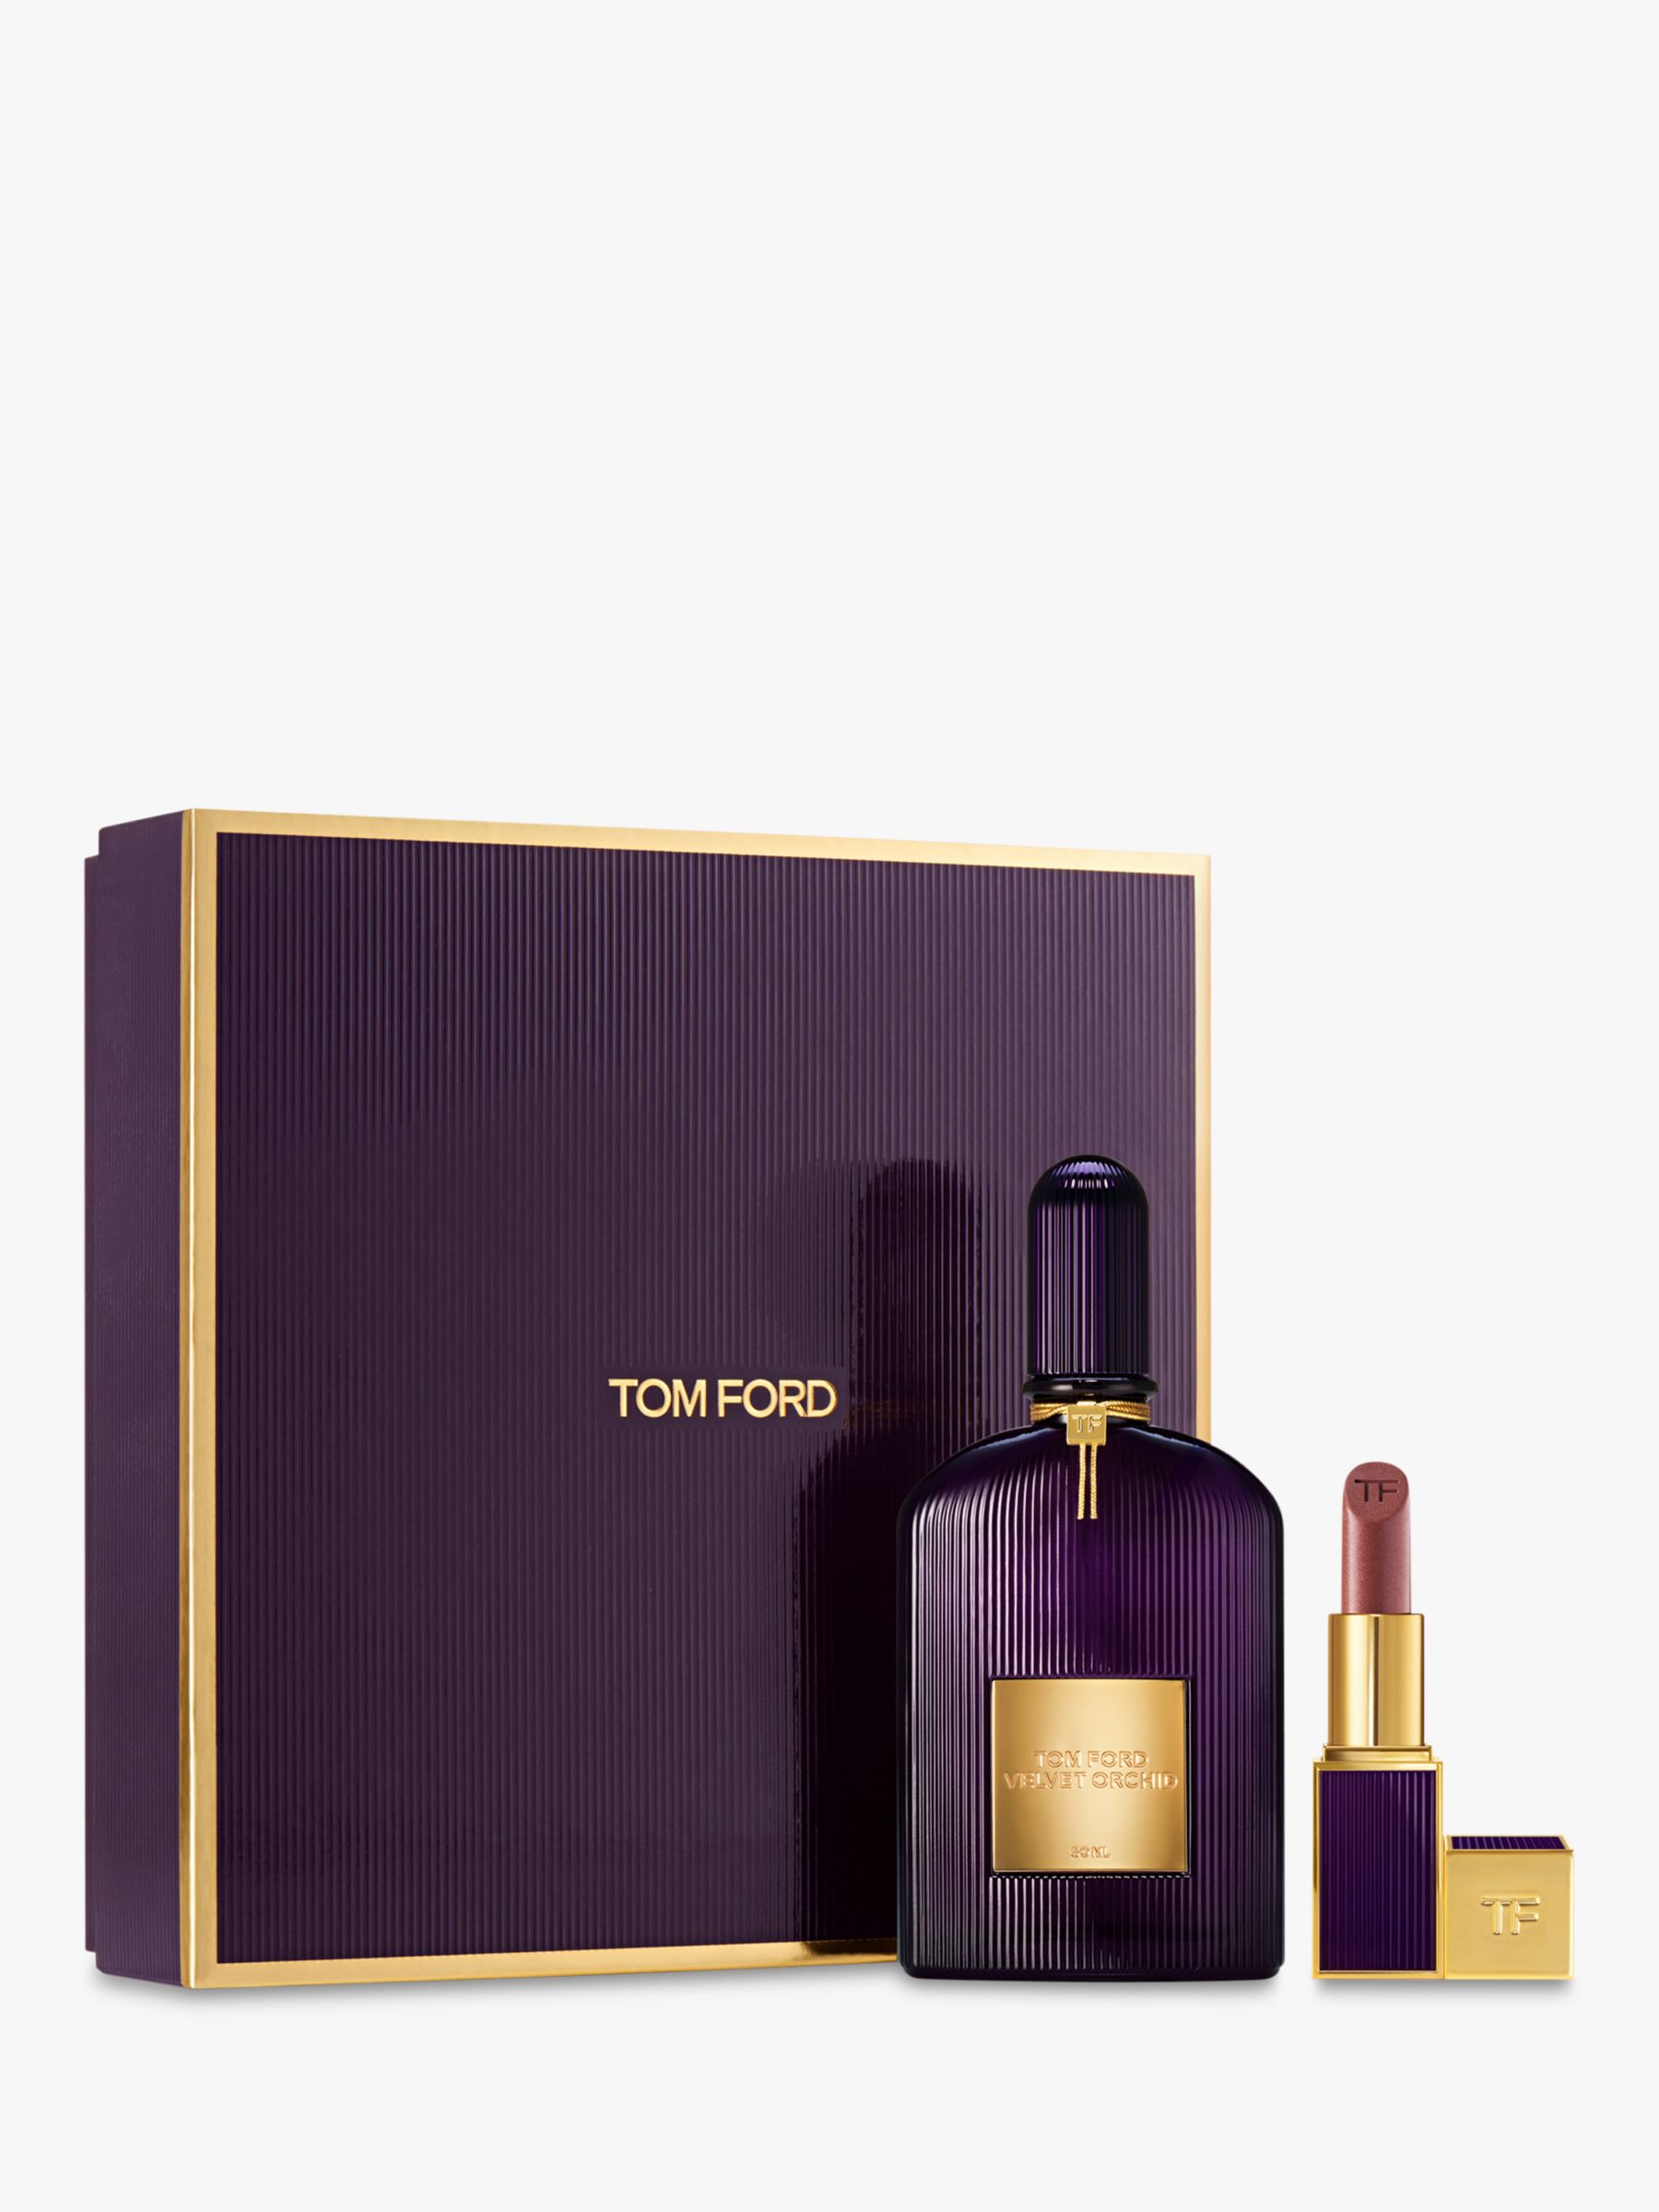 TOM FORD Velvet Orchid de Set 50ml Parfum Fragrance Eau Gift